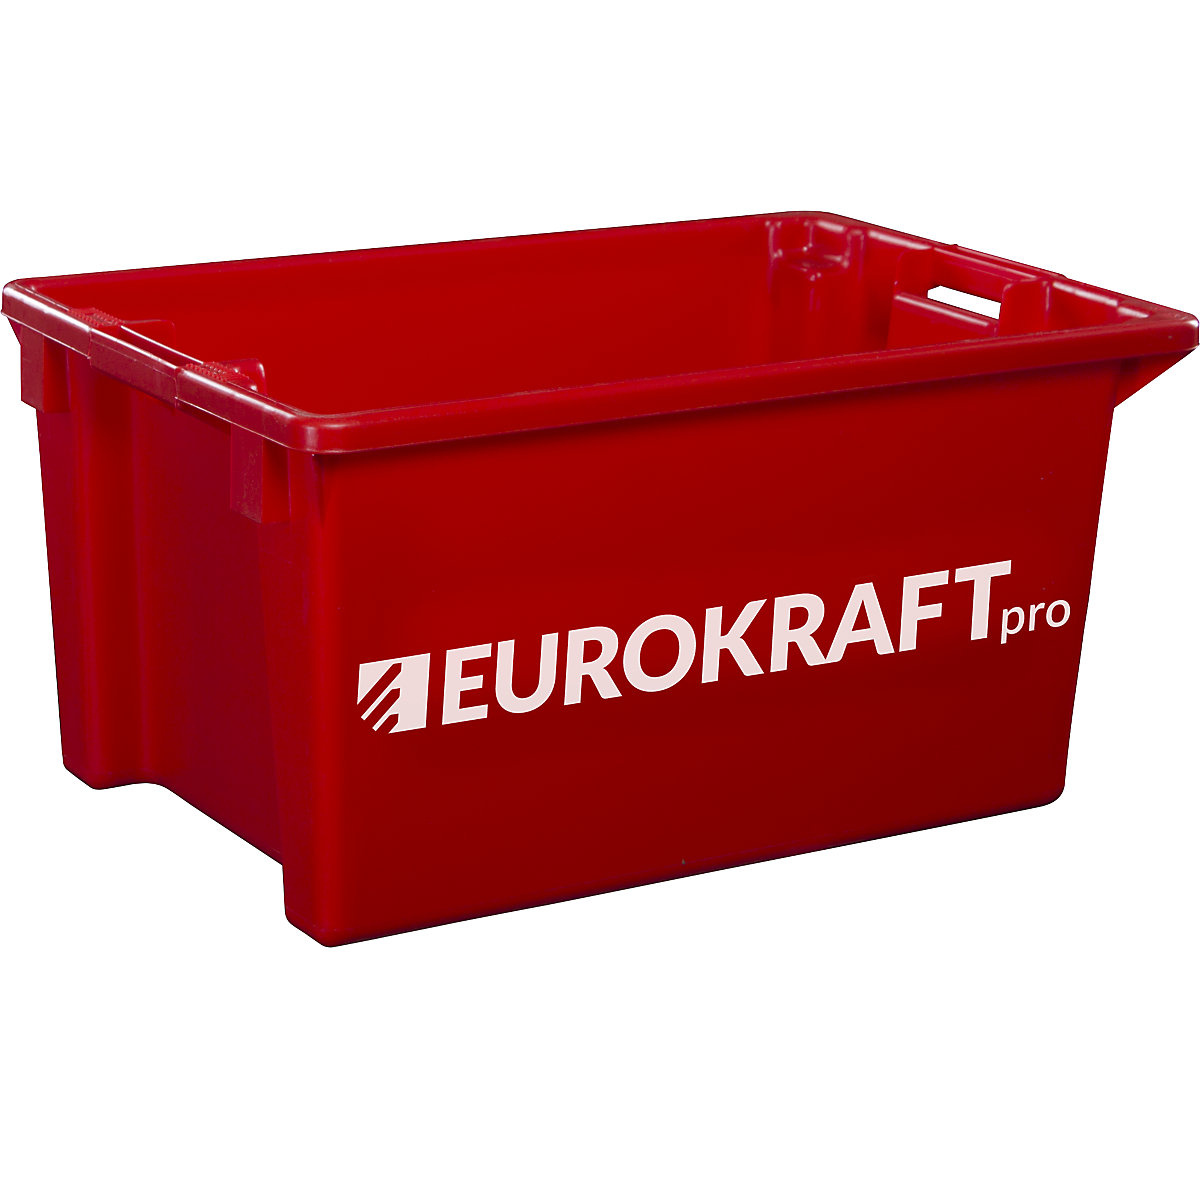 EUROKRAFTpro – Bac gerbable emboîtable en polypropylène qualité alimentaire, capacité 70 litres, lot de 2, parois et fond pleins, rouge